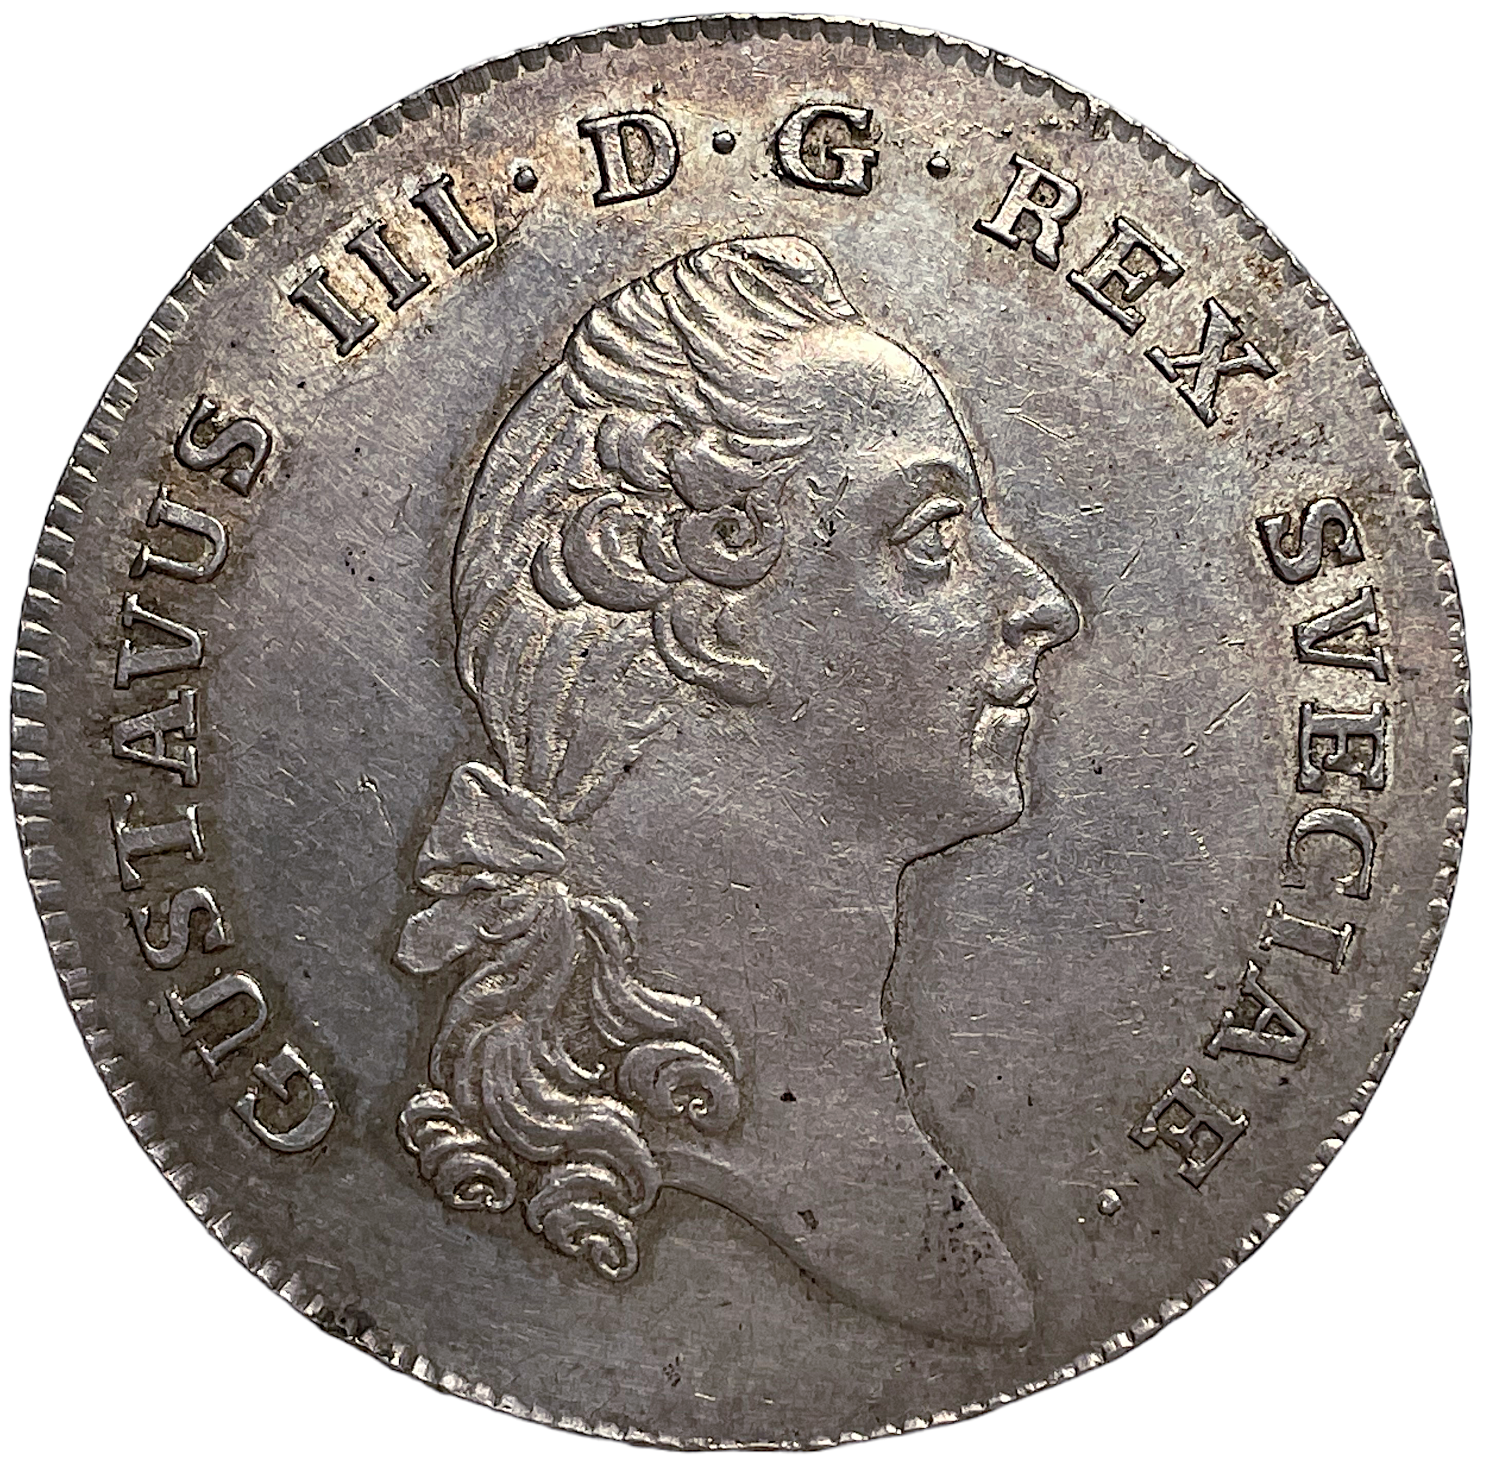 Gustav III - Riksdaler 1782 - Härligt distinkt exemplar med fin lyster